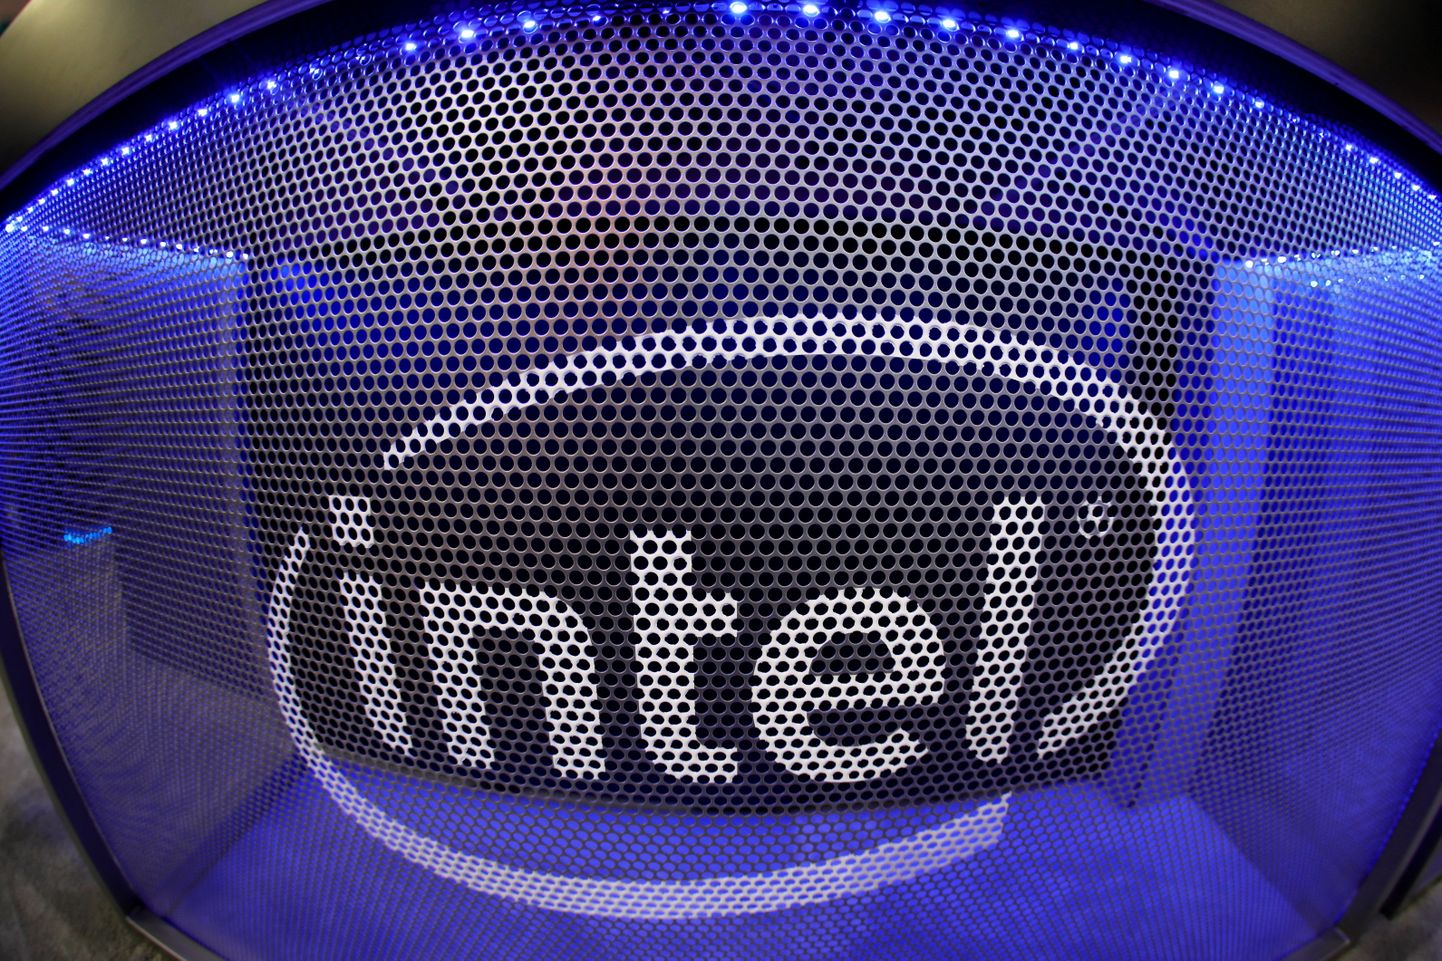 Inteli protsessorid võivad peale piirangute jõustumist Venemaale enam mitte jõuda.